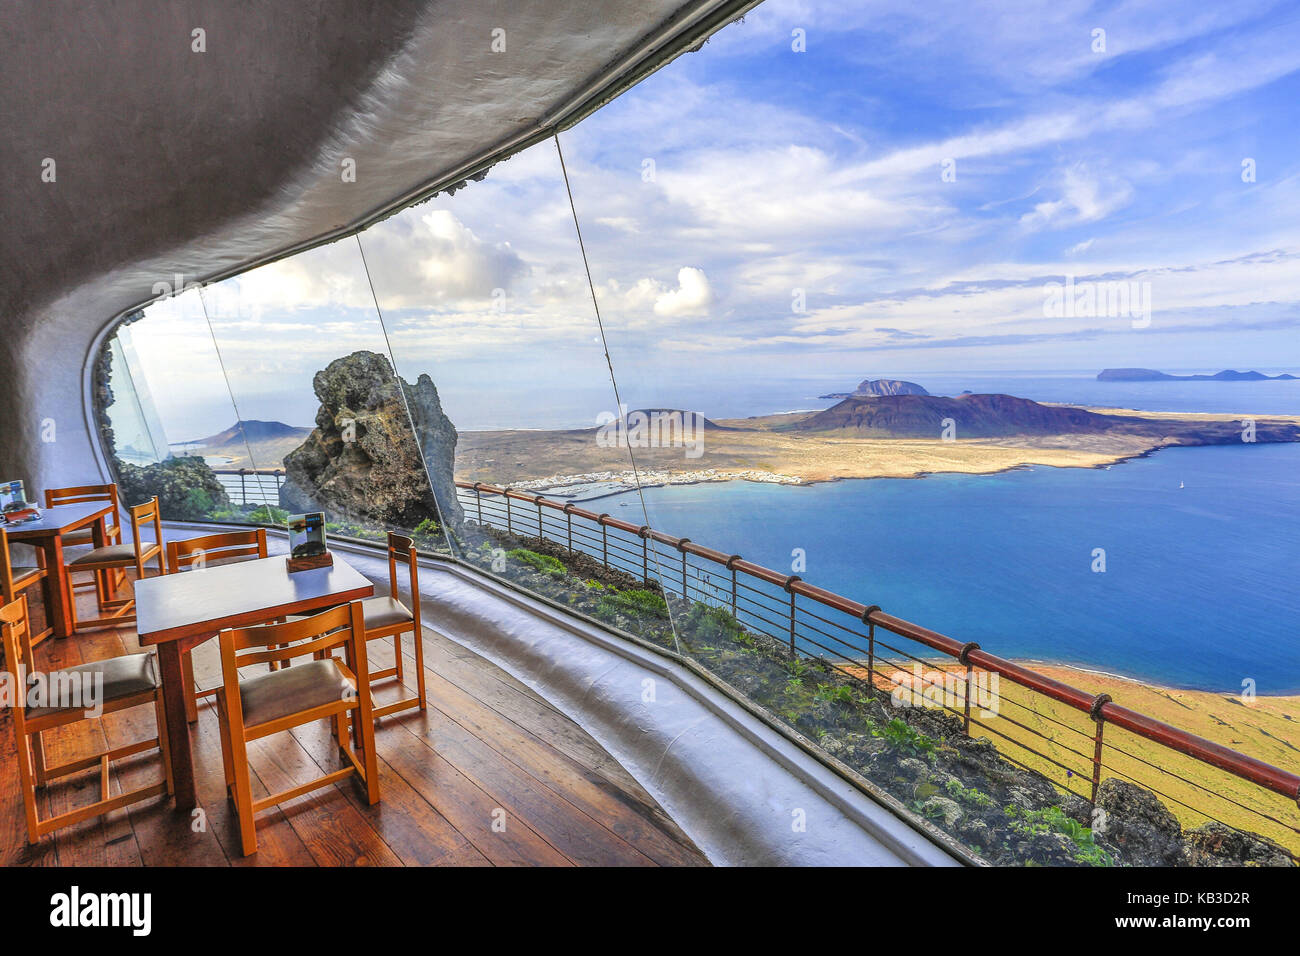 Spain, Canary islands, Lanzarote, Mirador del Rio, lookout, restaurant, interior shot, Stock Photo